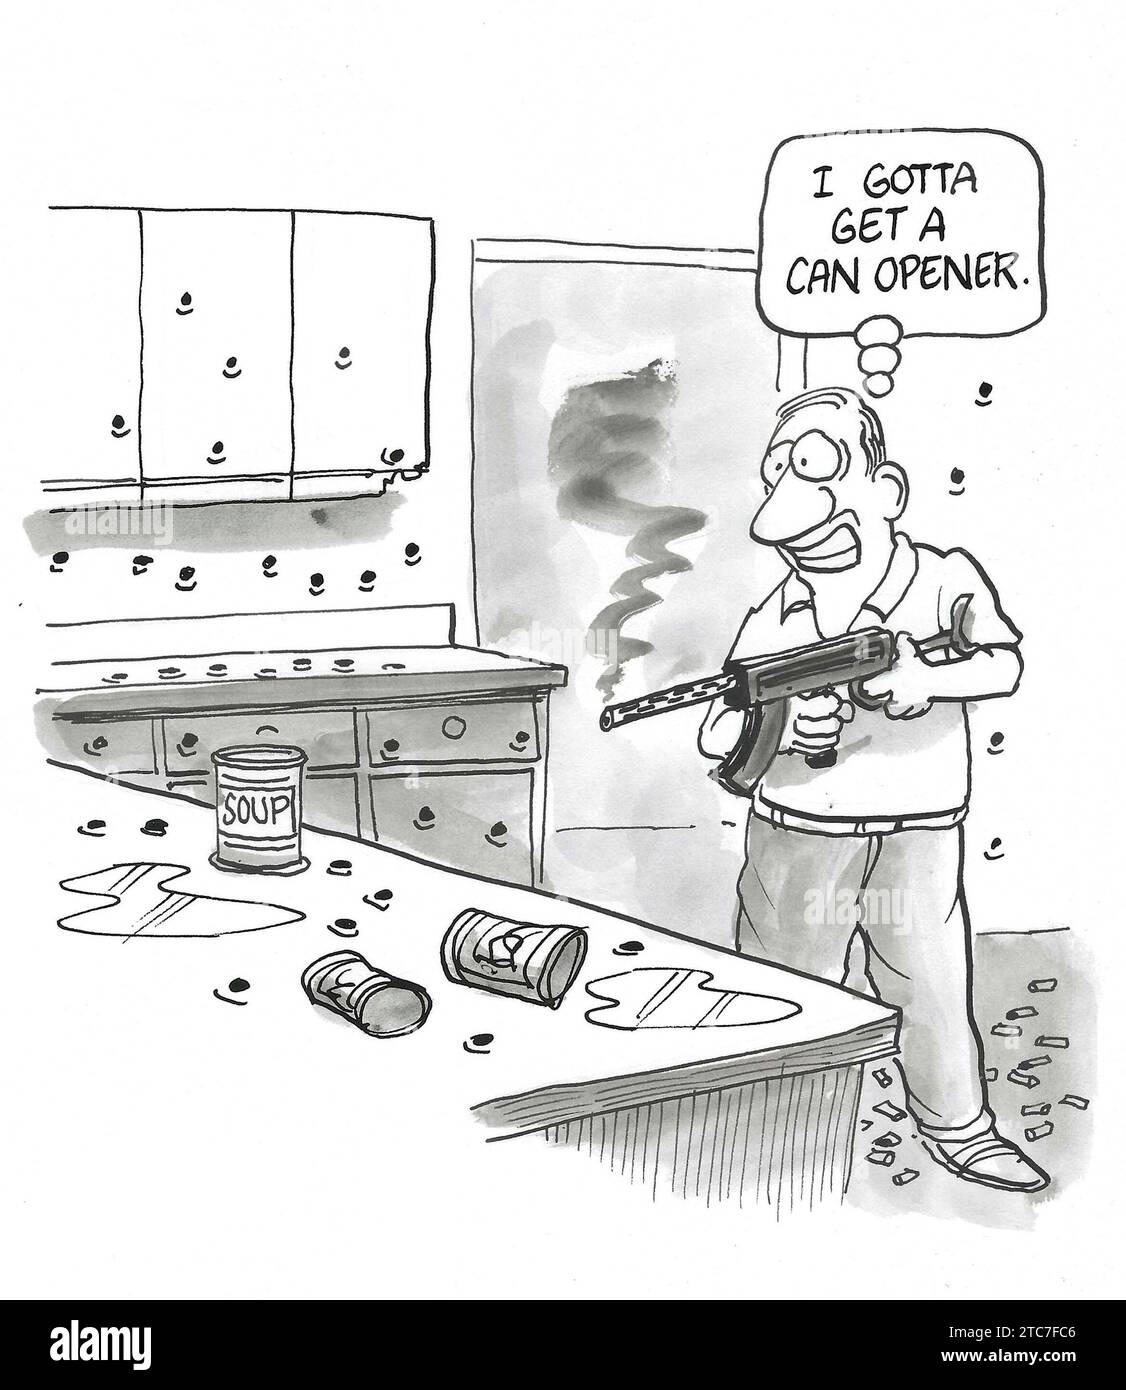 BW-Cartoon eines Mannes, der eine AR-15 Pistole benutzt, um Suppendosen zu öffnen, er braucht einen Dosenöffner. Stockfoto